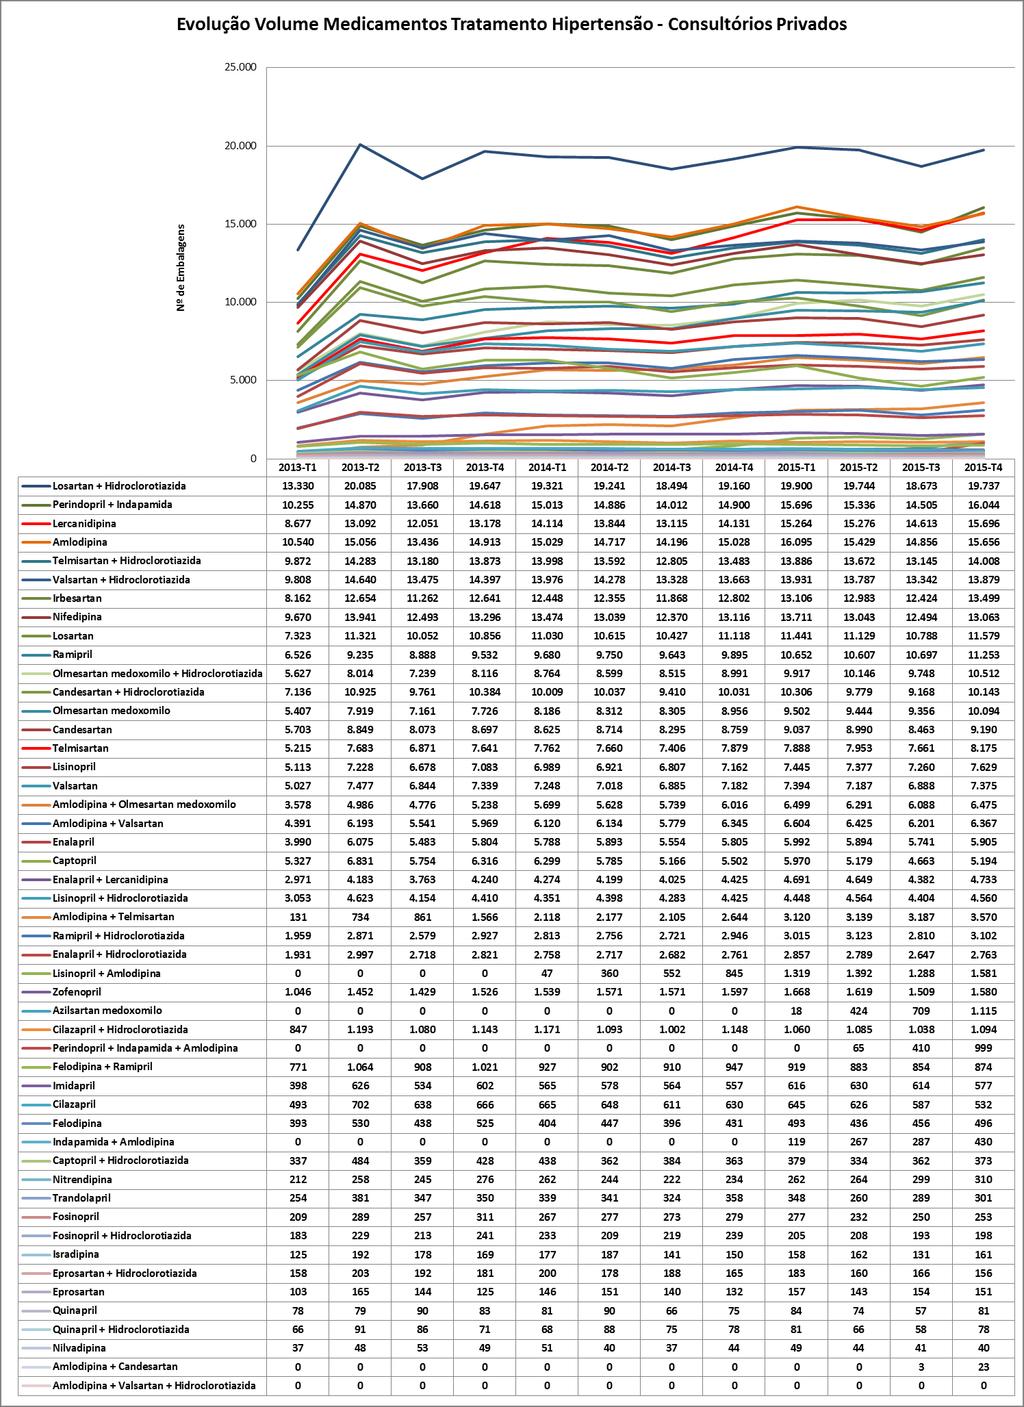 Gráfico 60: Evolução mensal do número de embalagens de antihipertensores nos Consultórios